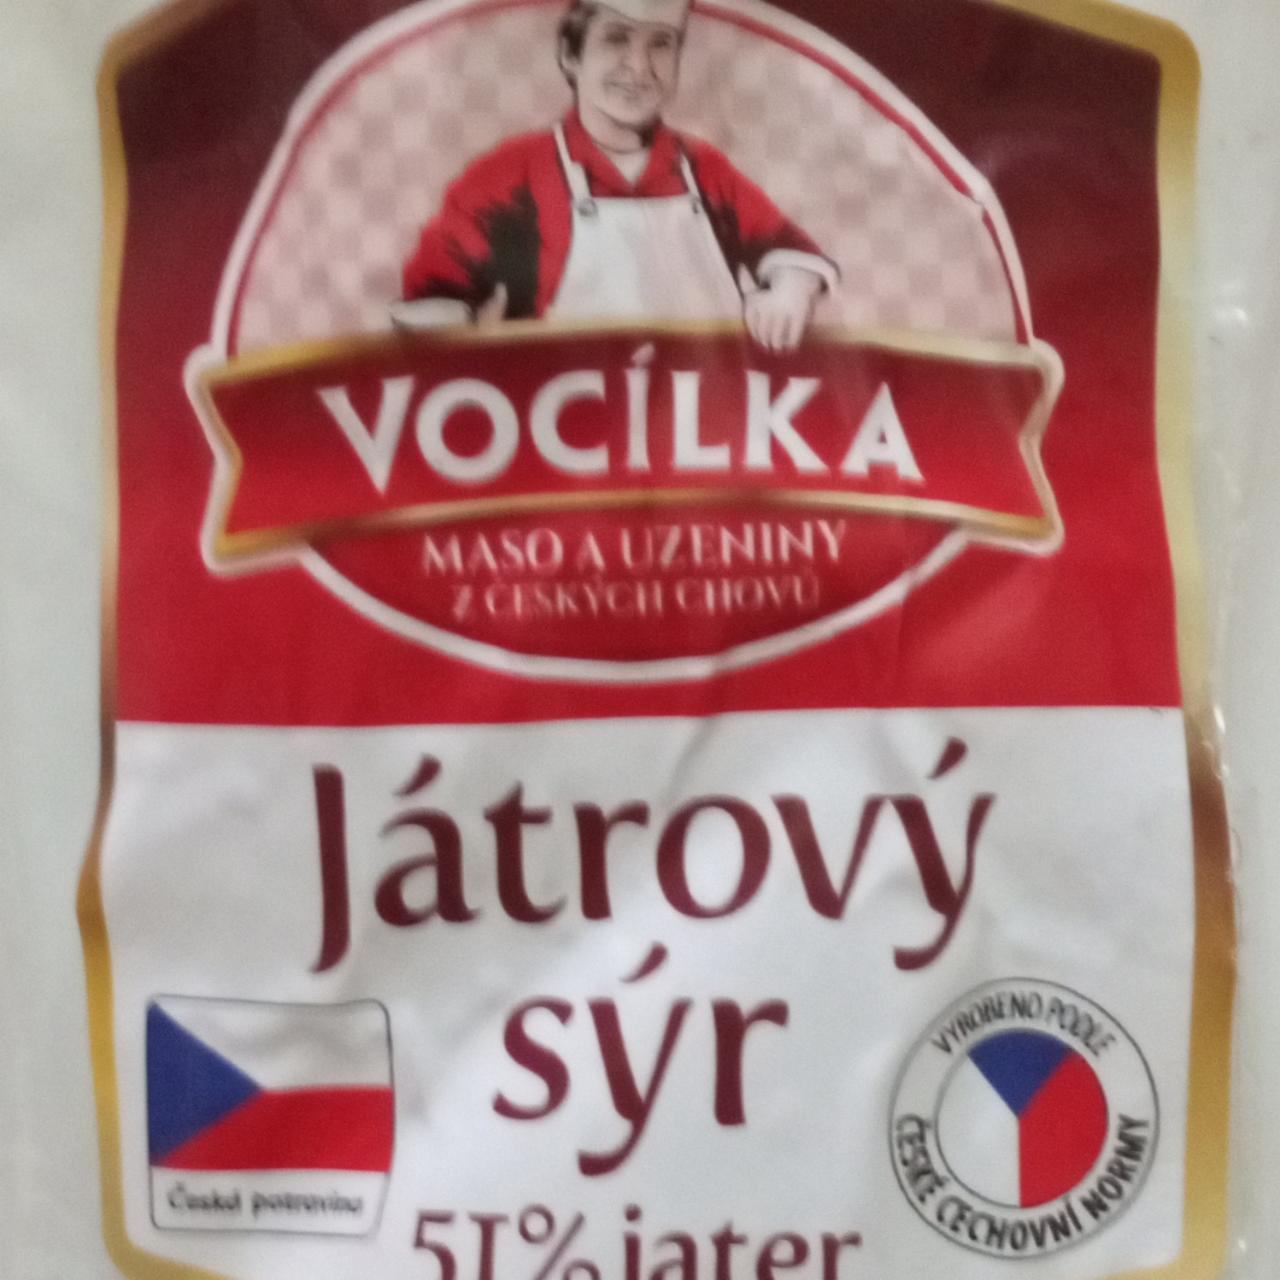 Fotografie - Játrový sýr Vocílka